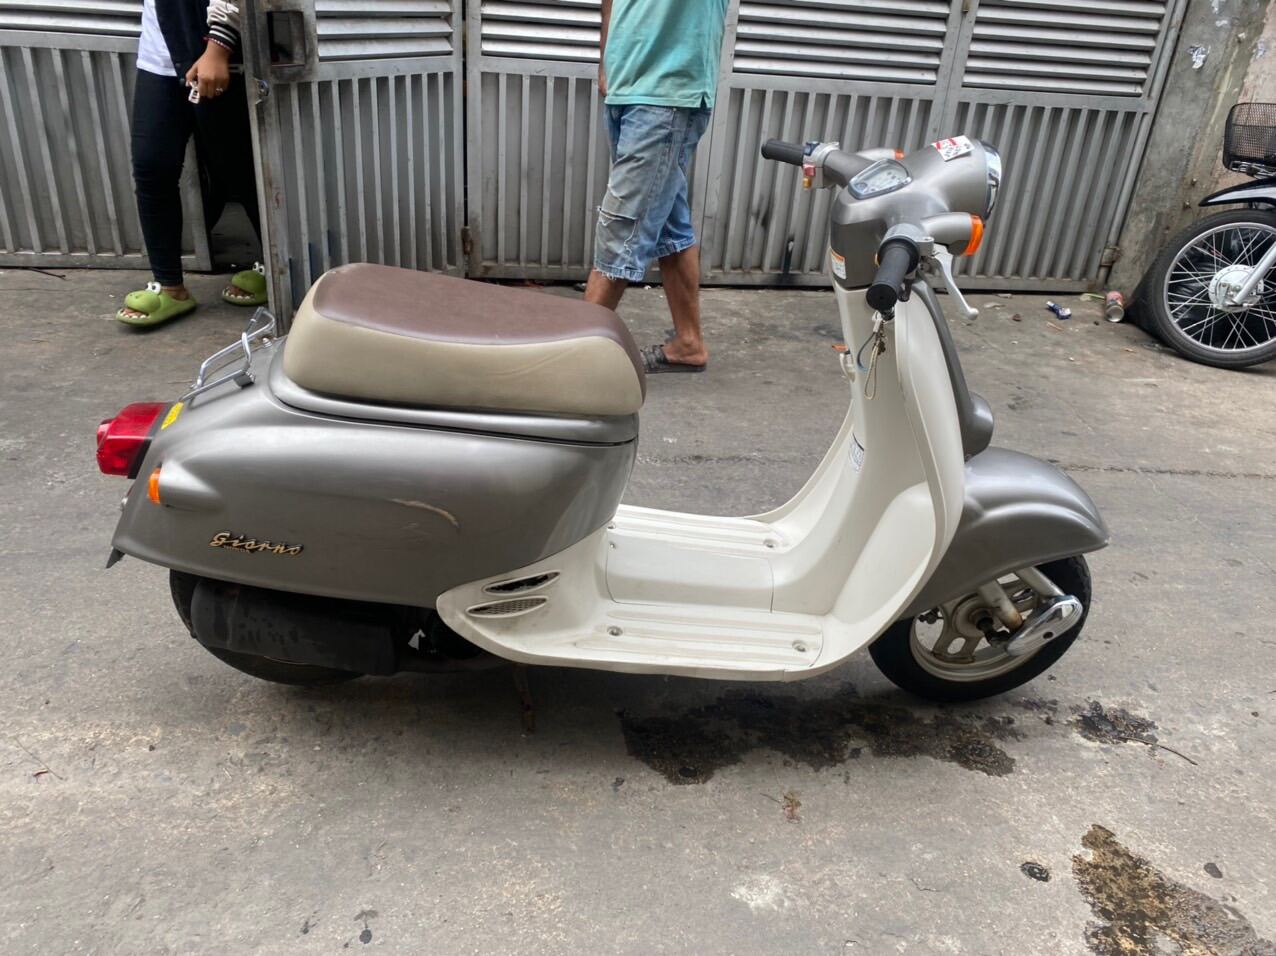 Cần bán xe tay ga 50cc 2 thì Giorno ở Hà Nội giá 17tr MSP 863000